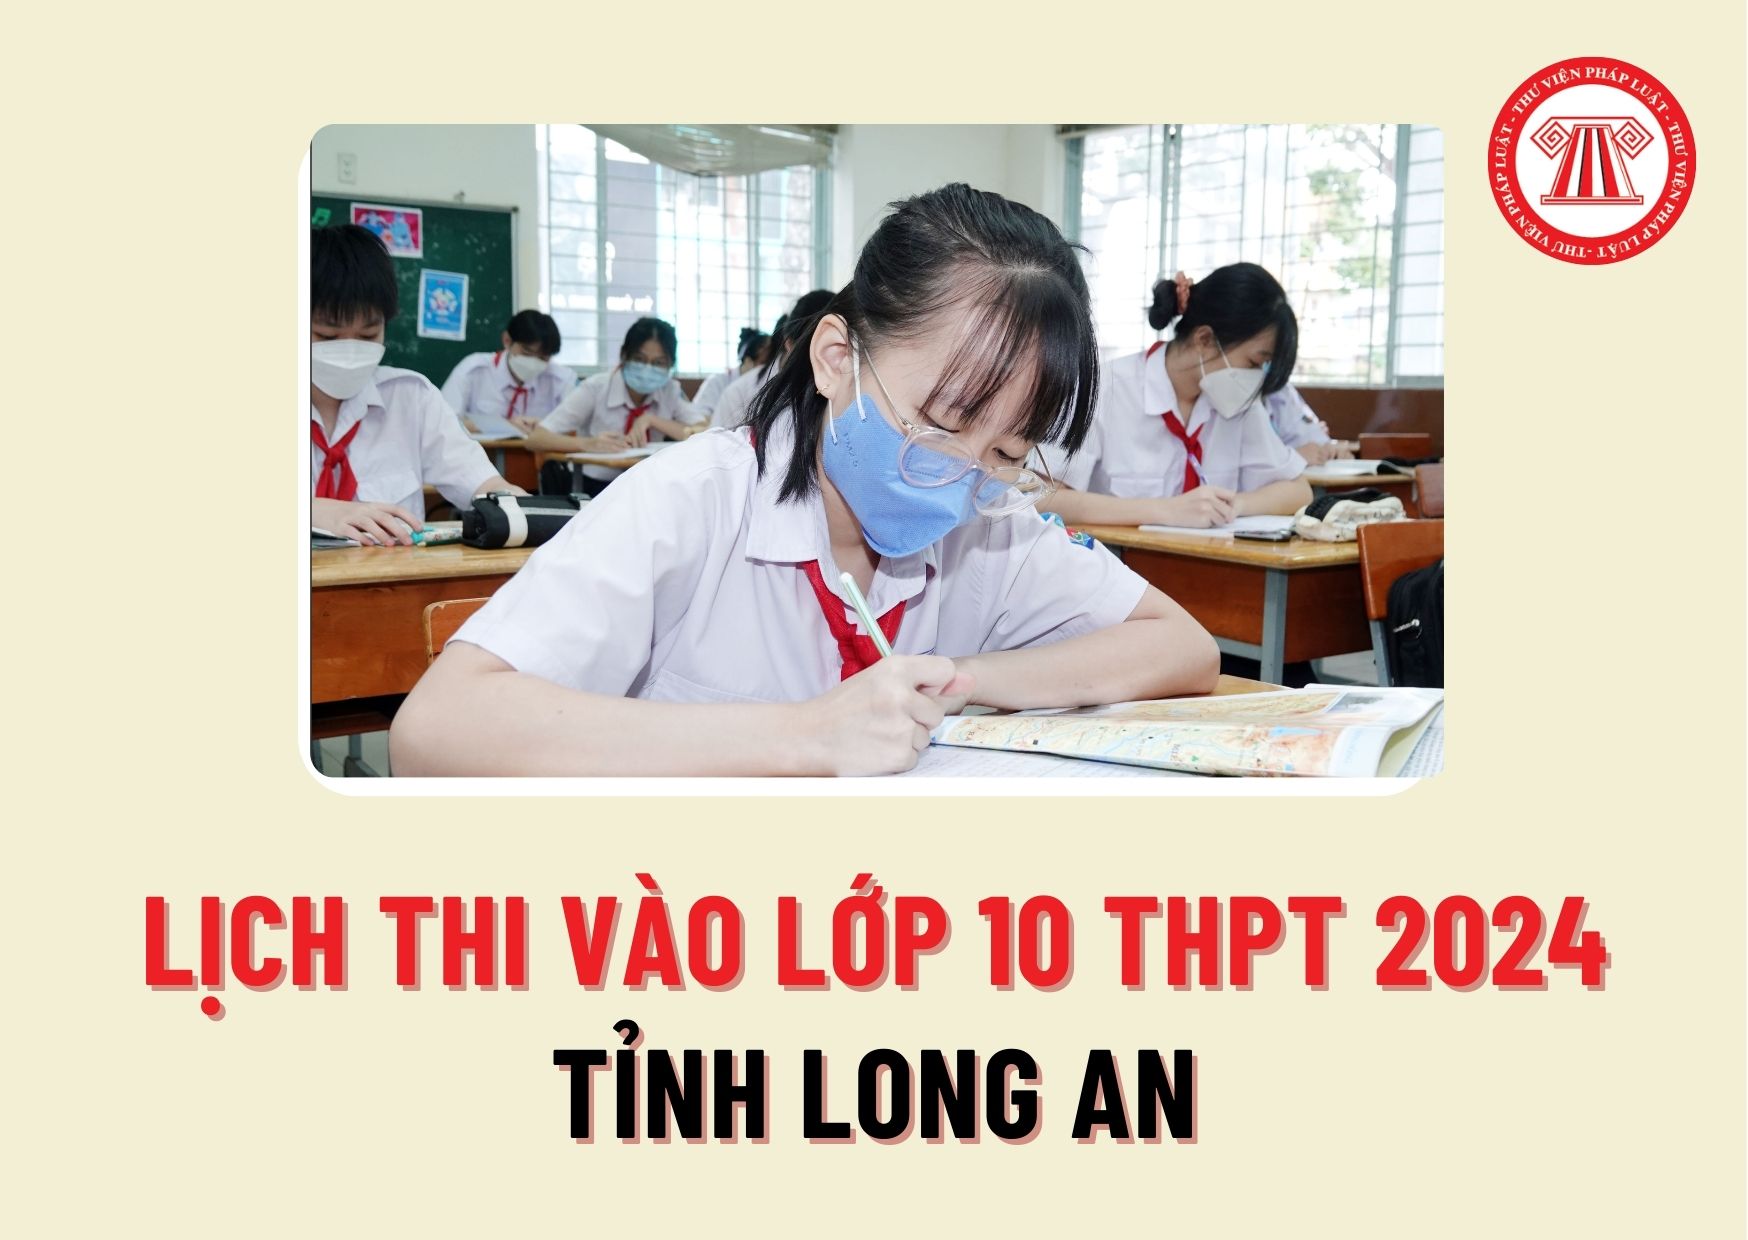 Lịch thi vào lớp 10 THPT 2024 tỉnh Long An vào ngày nào? Kỳ thi tuyển sinh vào lớp 10 tỉnh Long An thi những môn gì?